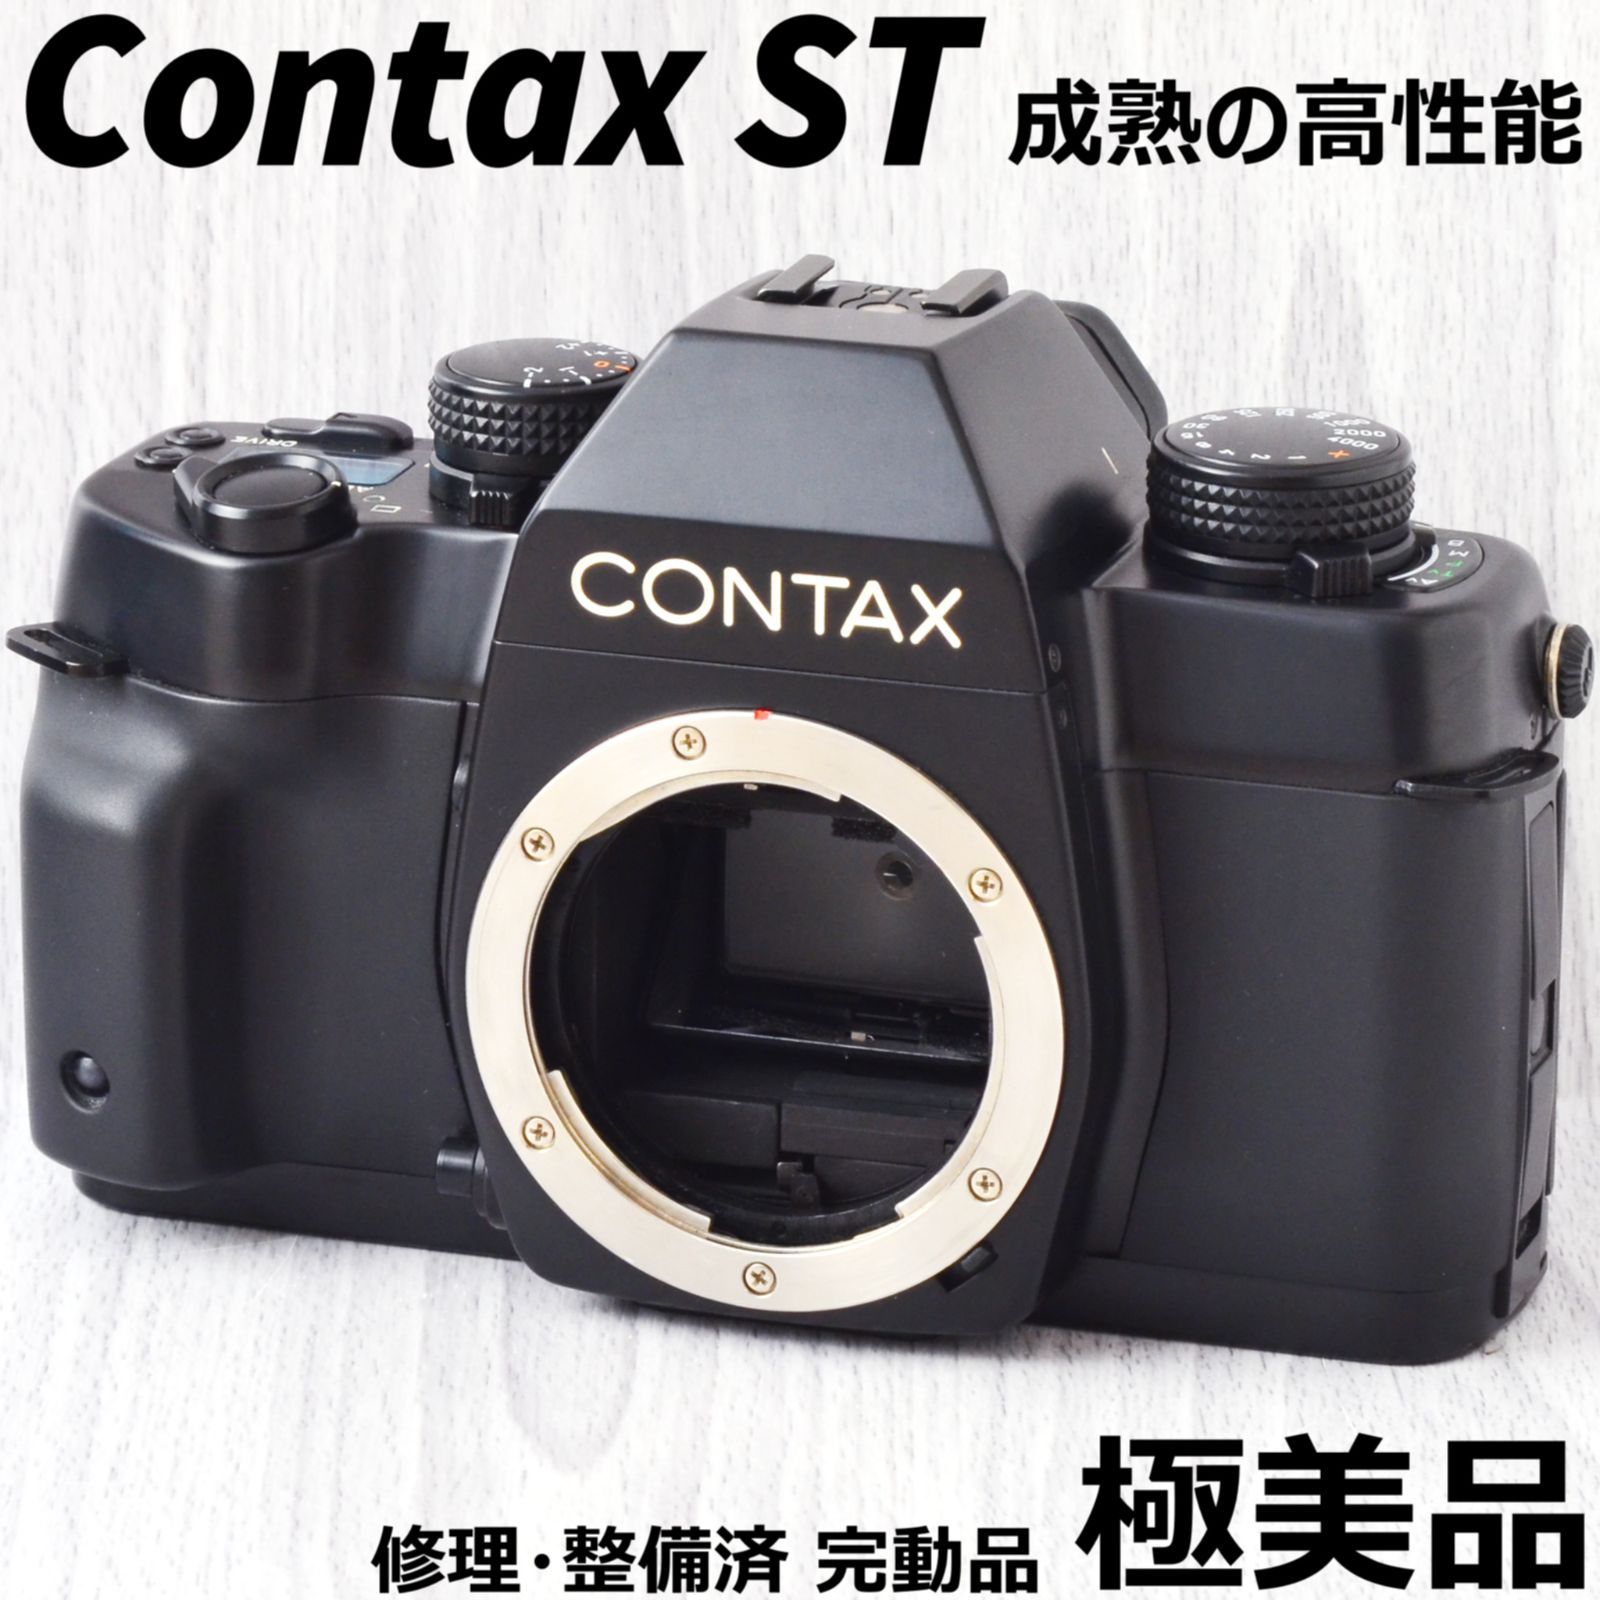 超特価 CONTAX コンタックス ST レンズセット beaufortnc.com